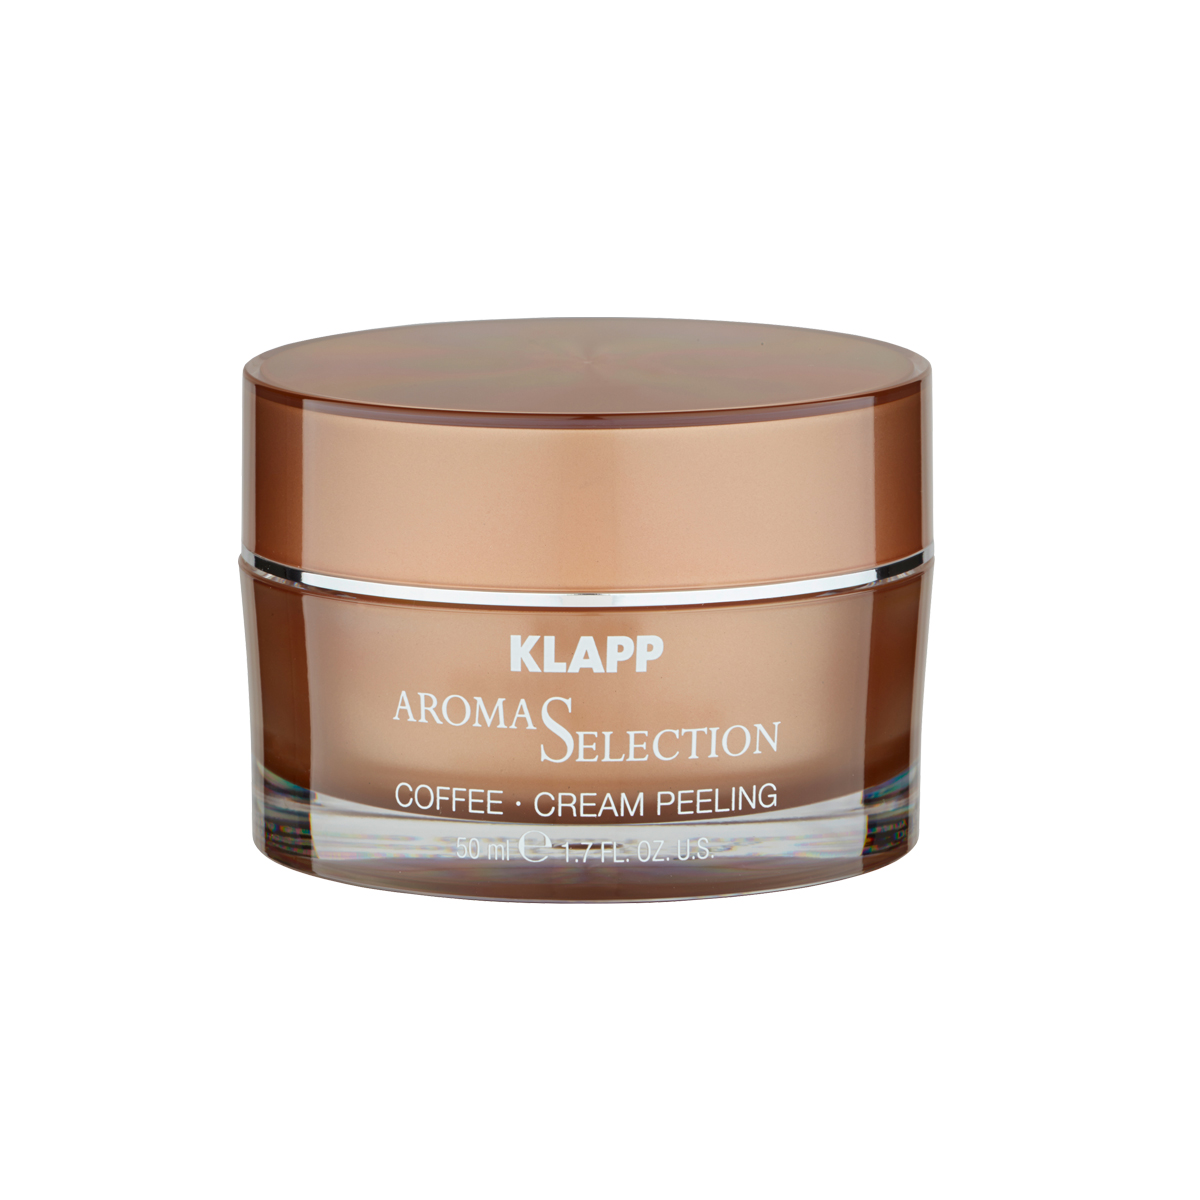 KLAPP Aroma Selection Coffee Cream Peeling 50 ml